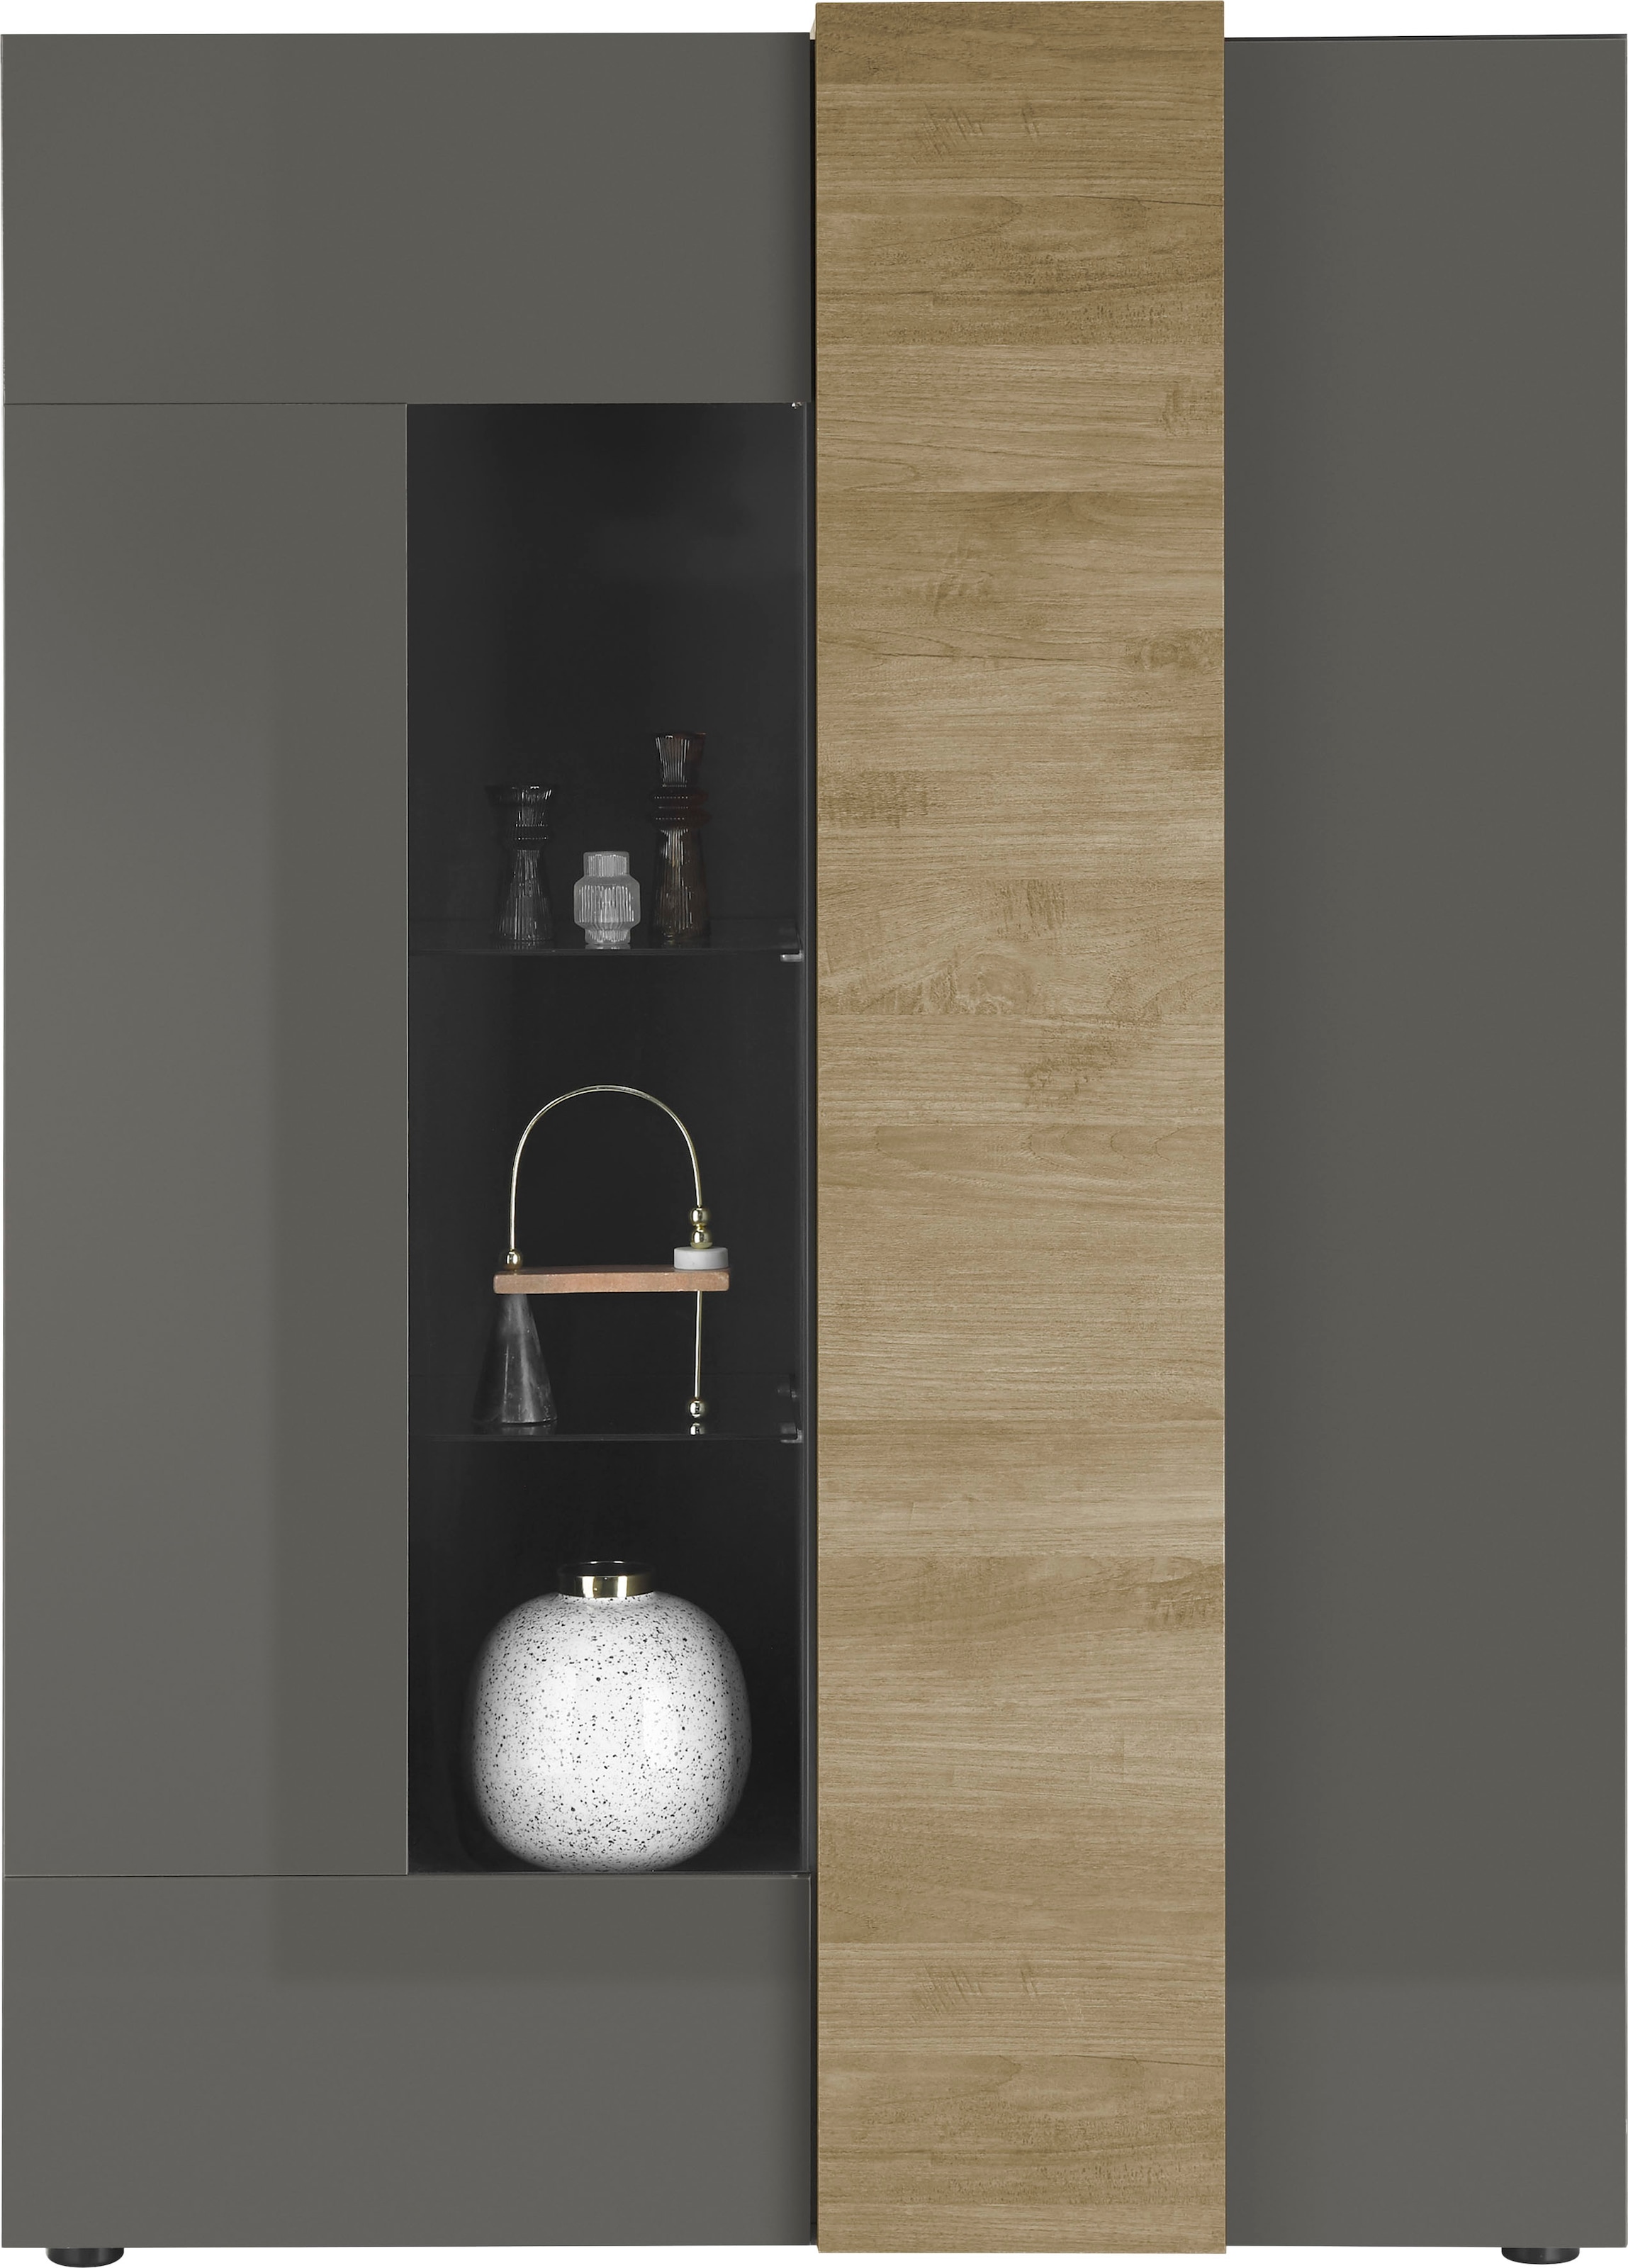 MCA furniture Vitrine »Positano«, Höhe ca. 168 cm günstig kaufen